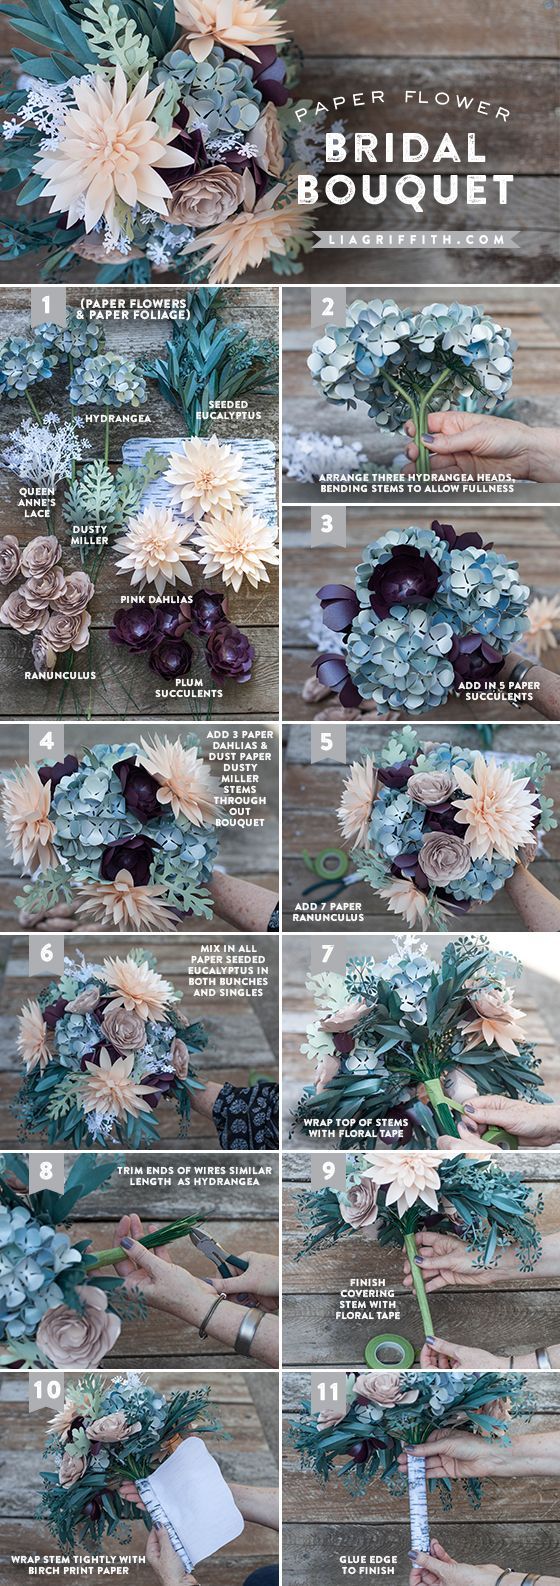 Paper flower bridal bouquet tutorial @LiaGriffith.com